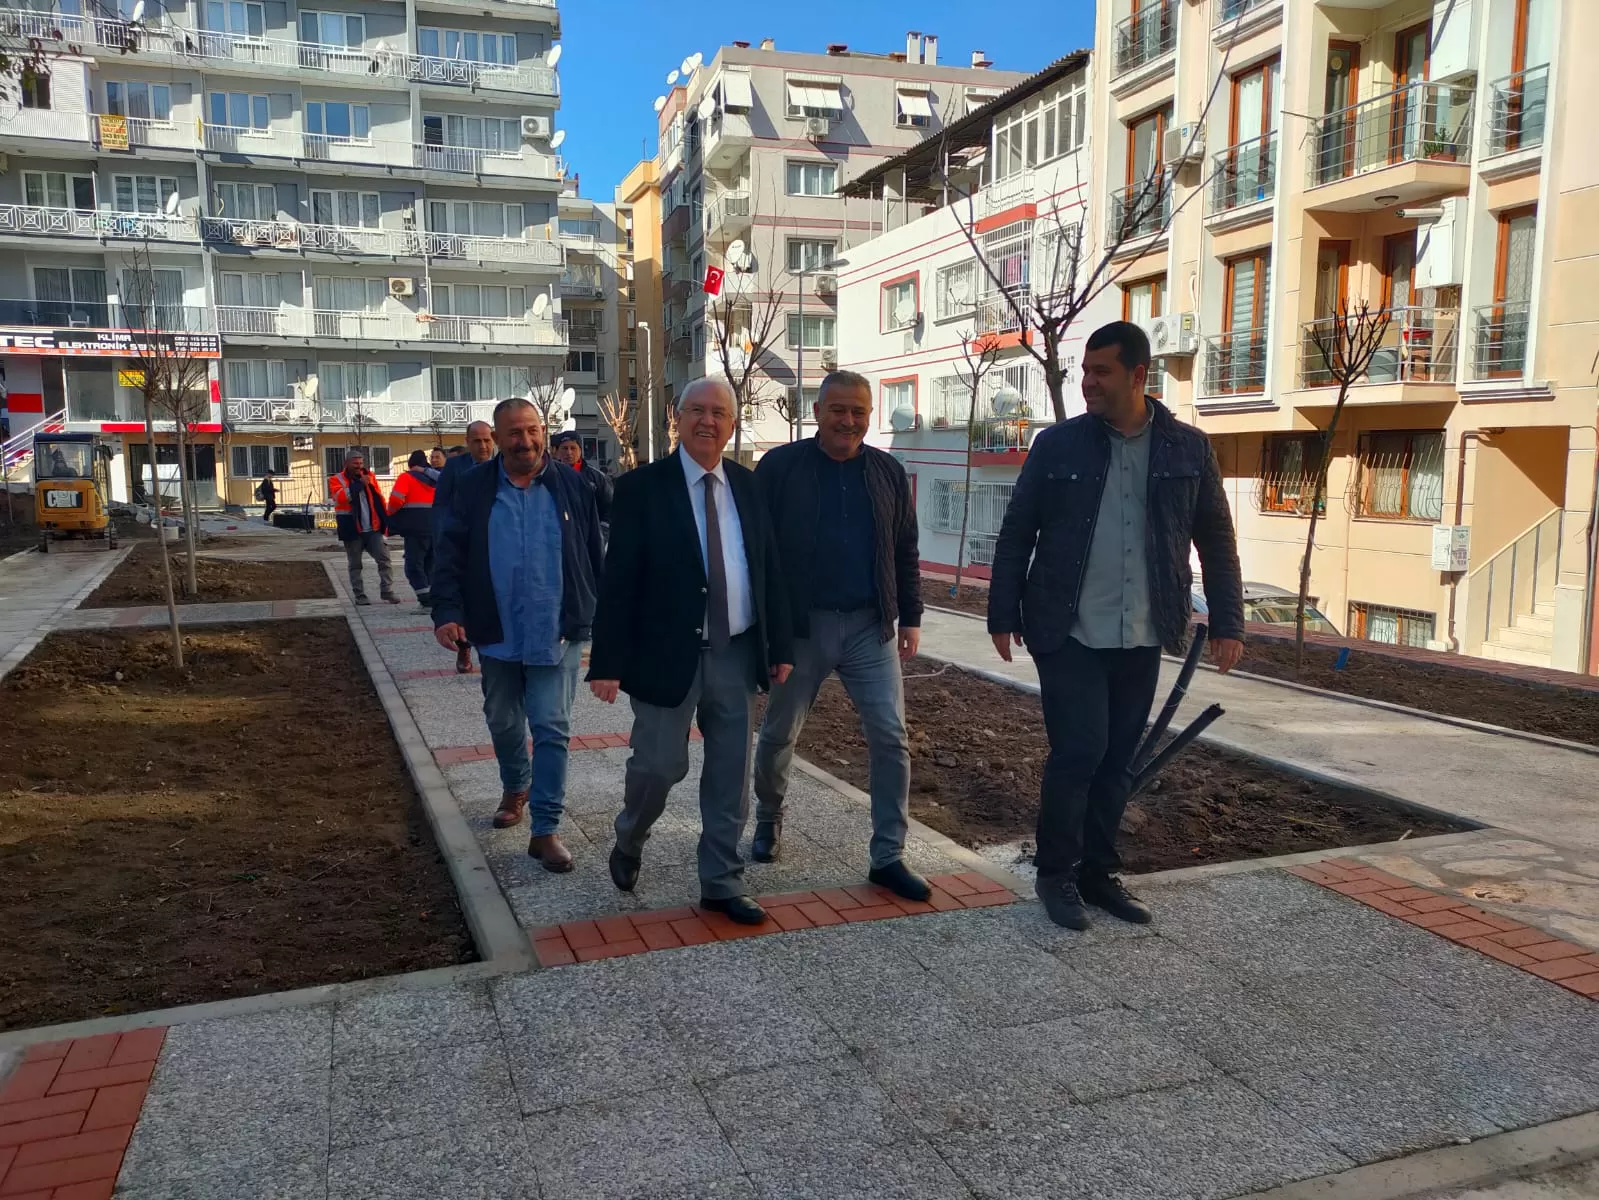 Karabağlar Belediyesi, Vatan Mahallesi'nde kaldırım ve kilit parke taşı döşeme çalışmalarını tamamladı. Başkan Muhittin Selvitopu, çalışmaları yerinde inceleyerek vatandaşlarla sohbet etti.